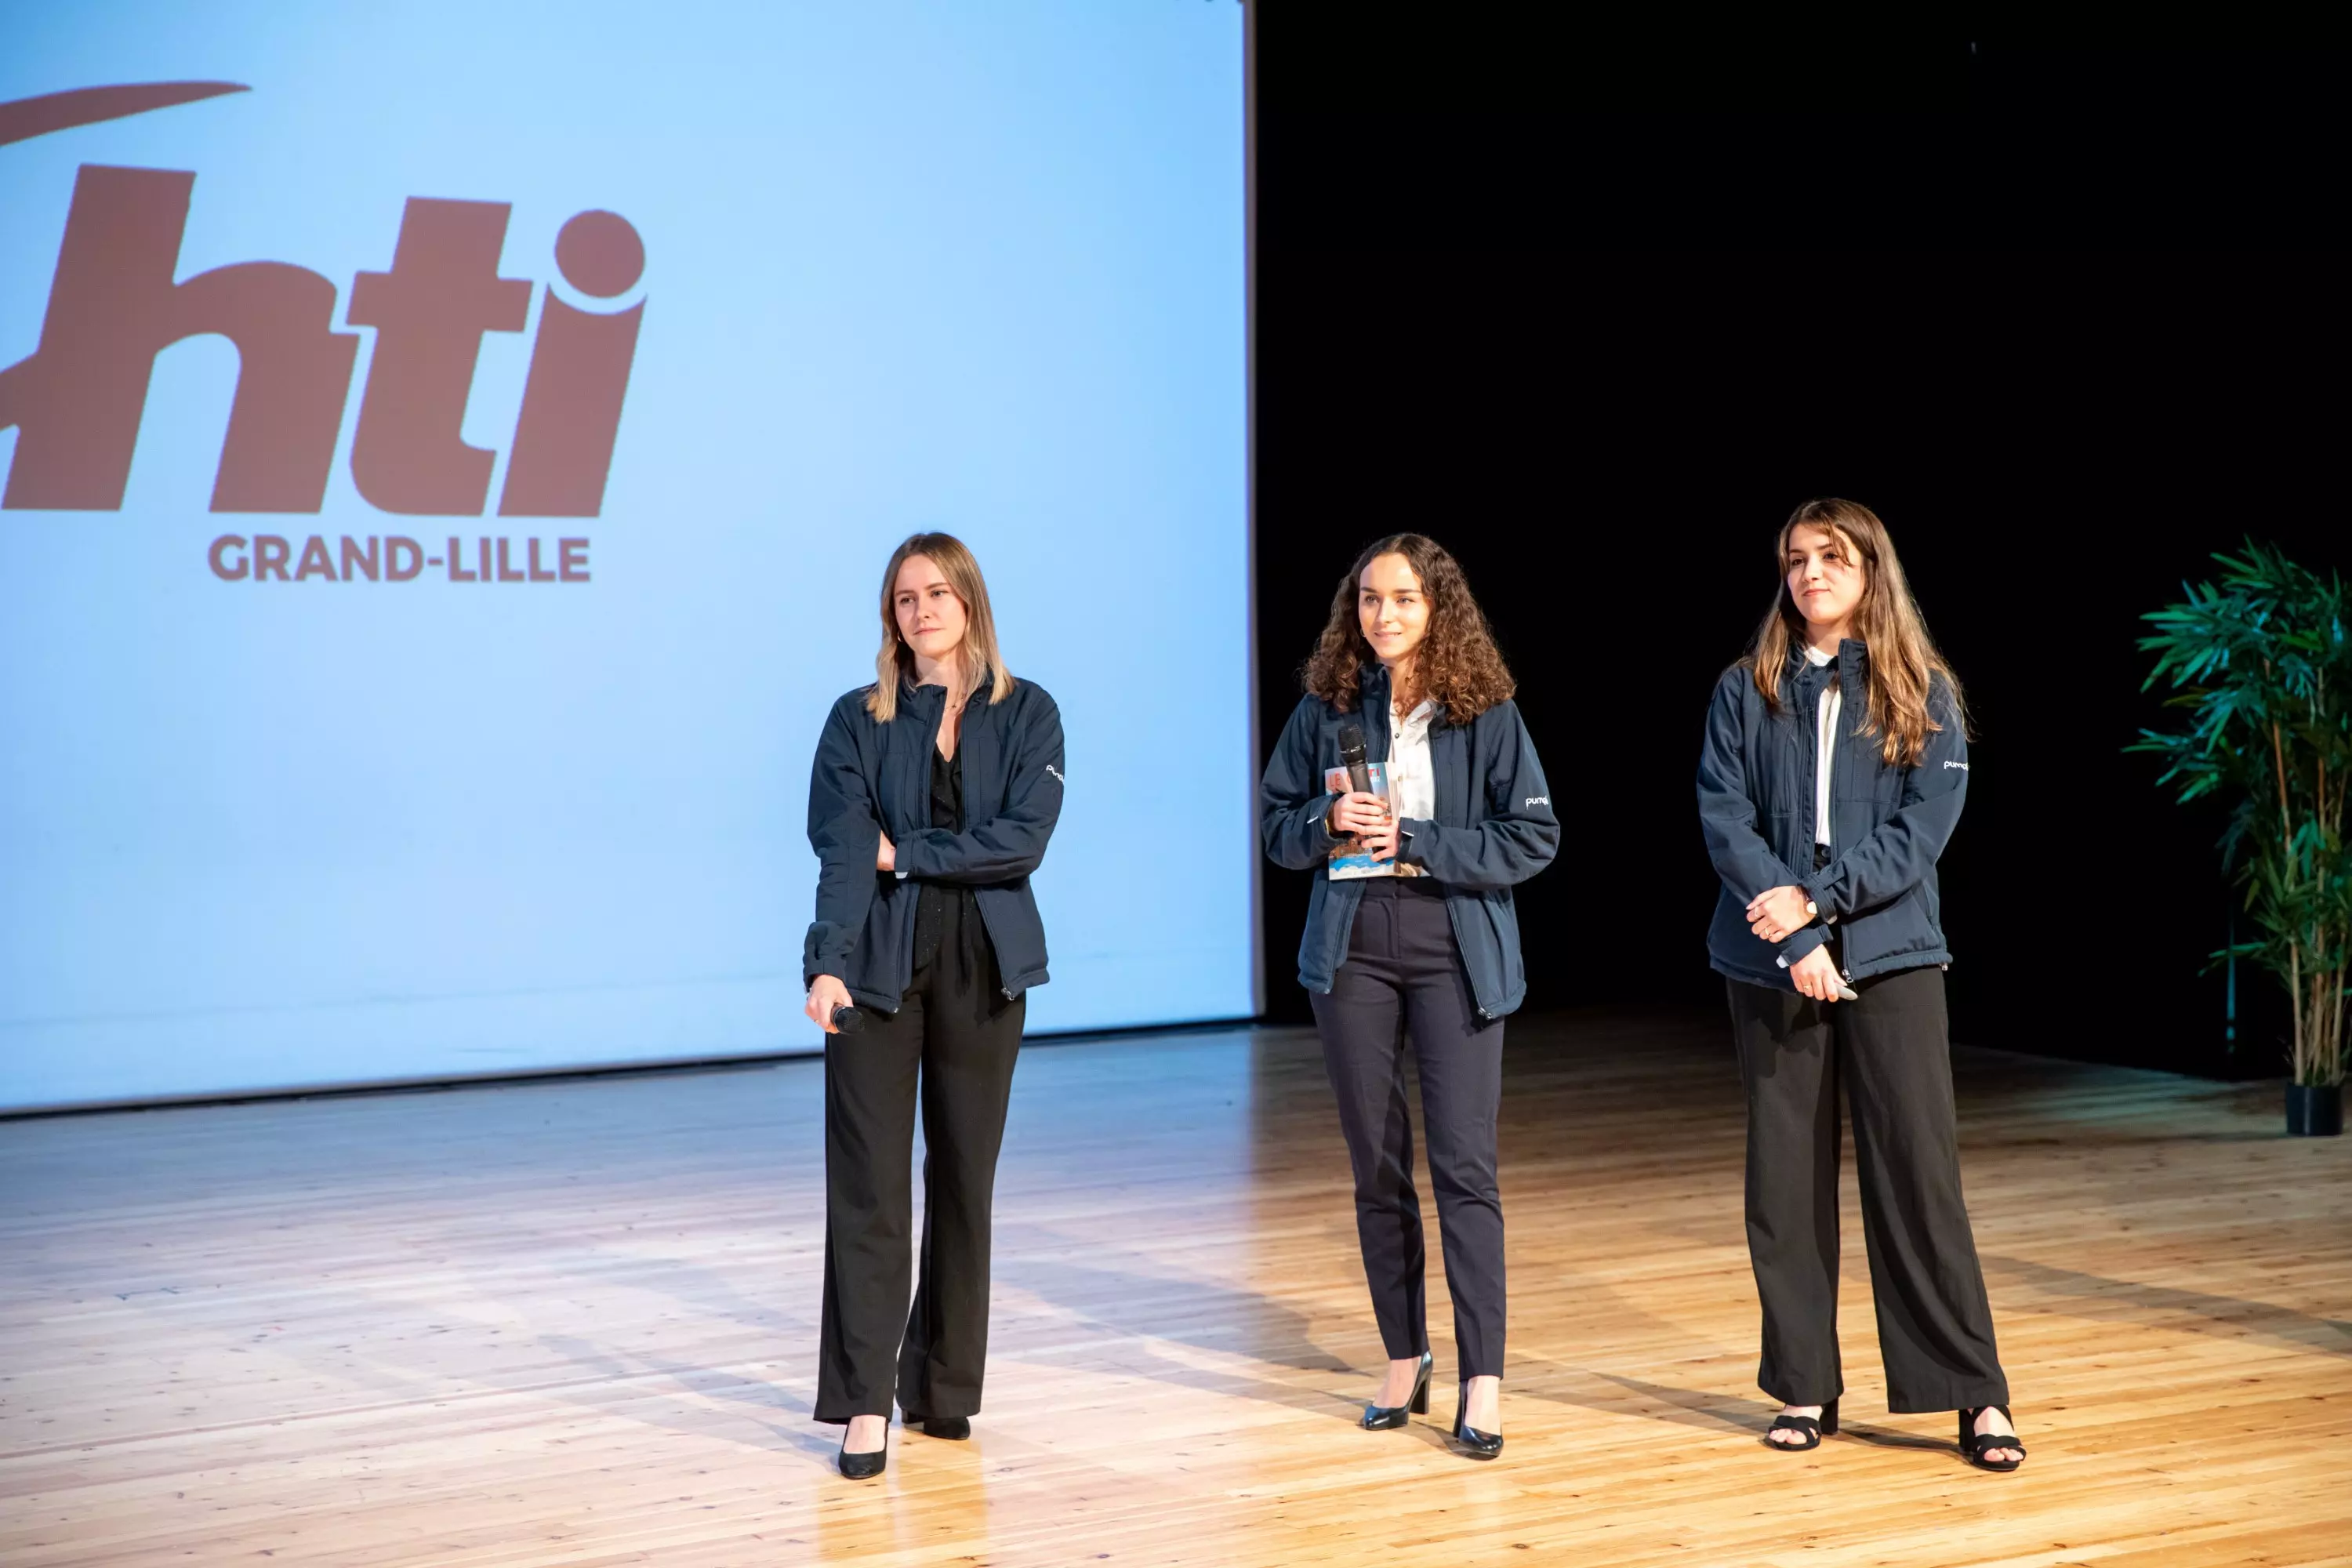 Photo du pitch de l'association Le Chti Grand Lille sur scène avec sa présentation dans le fond